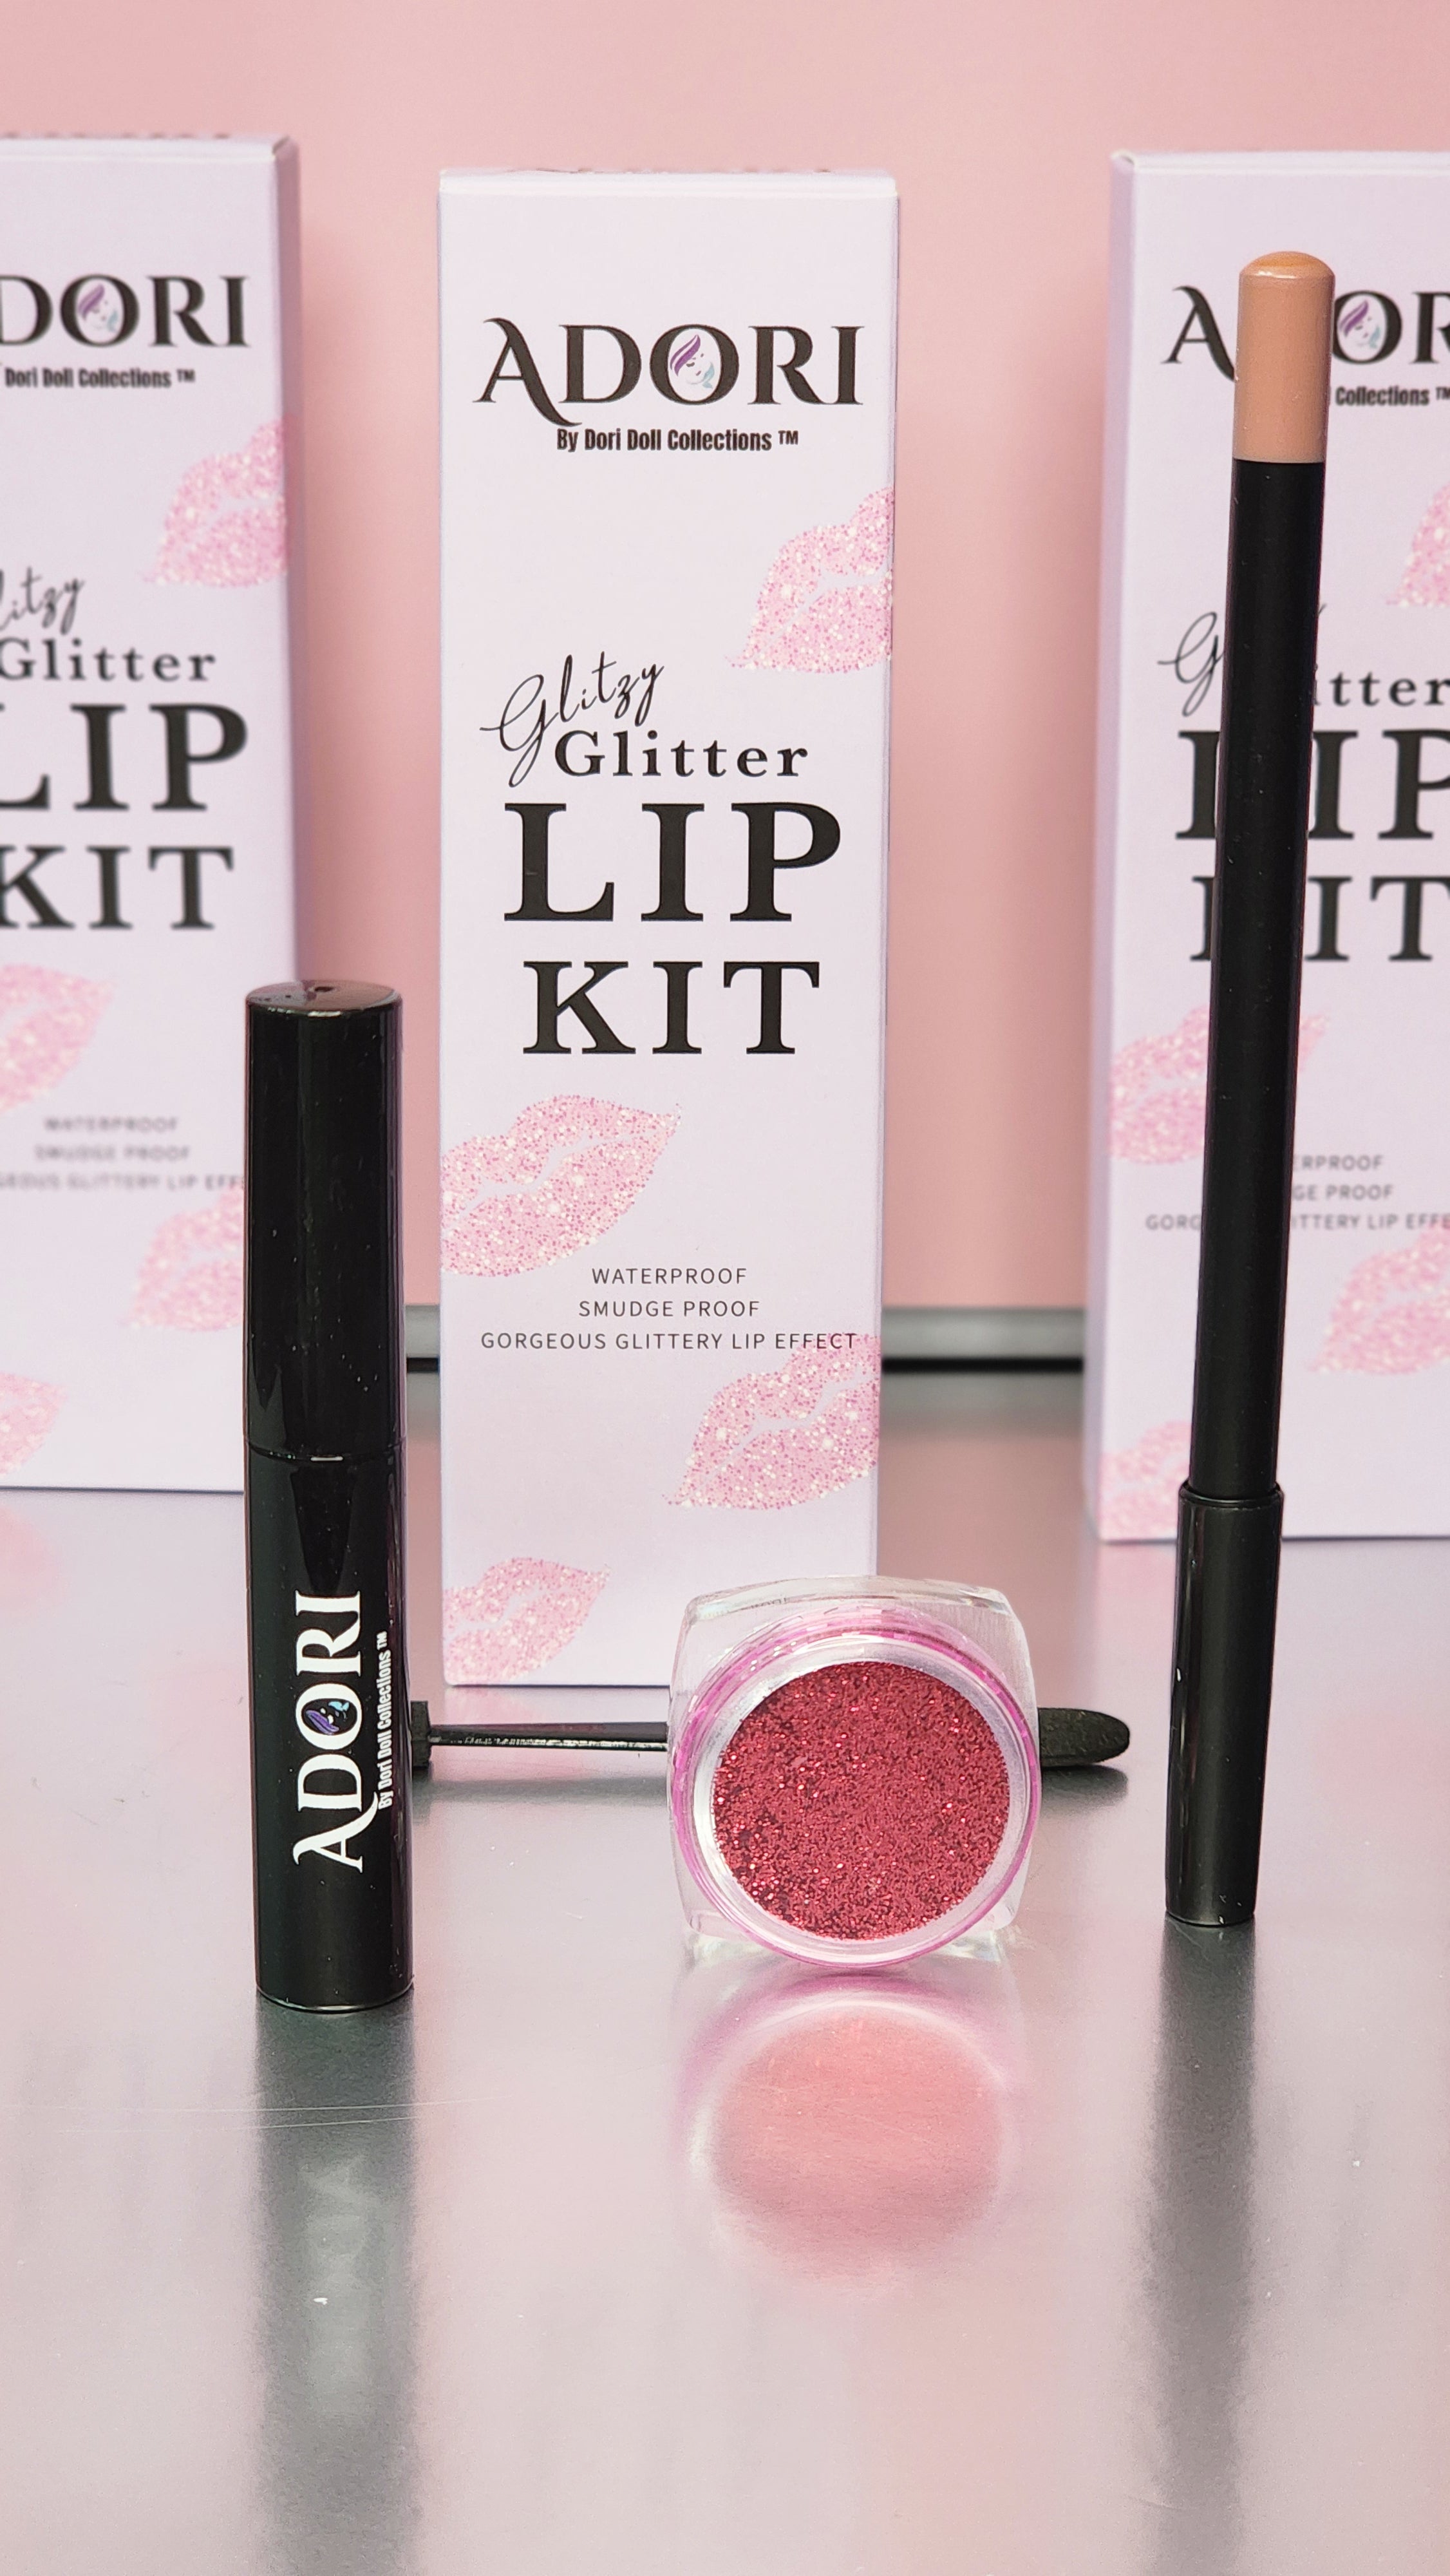 Glitzy Glitter lip kit